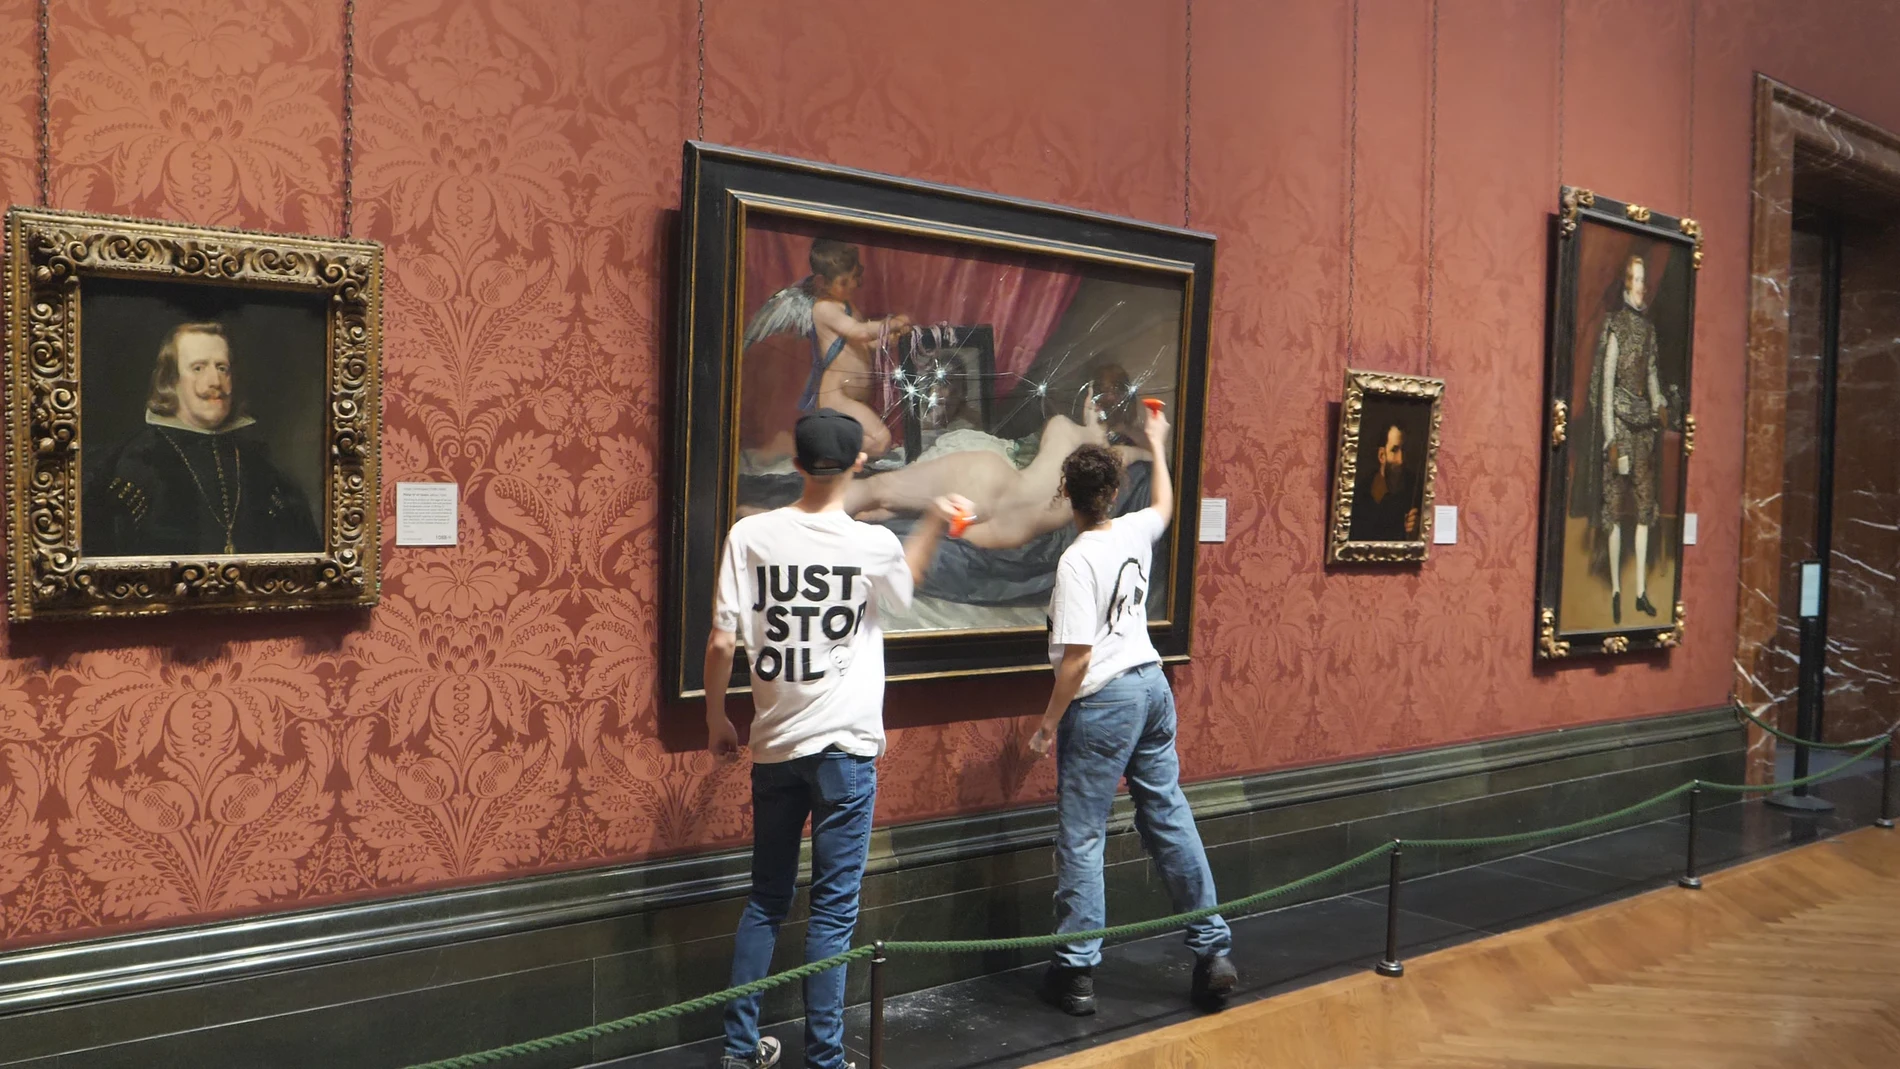 Ribera rechaza "profundamente" las acciones violentas para reivindicar objetivos tras el ataque a 'La Venus del espejo'